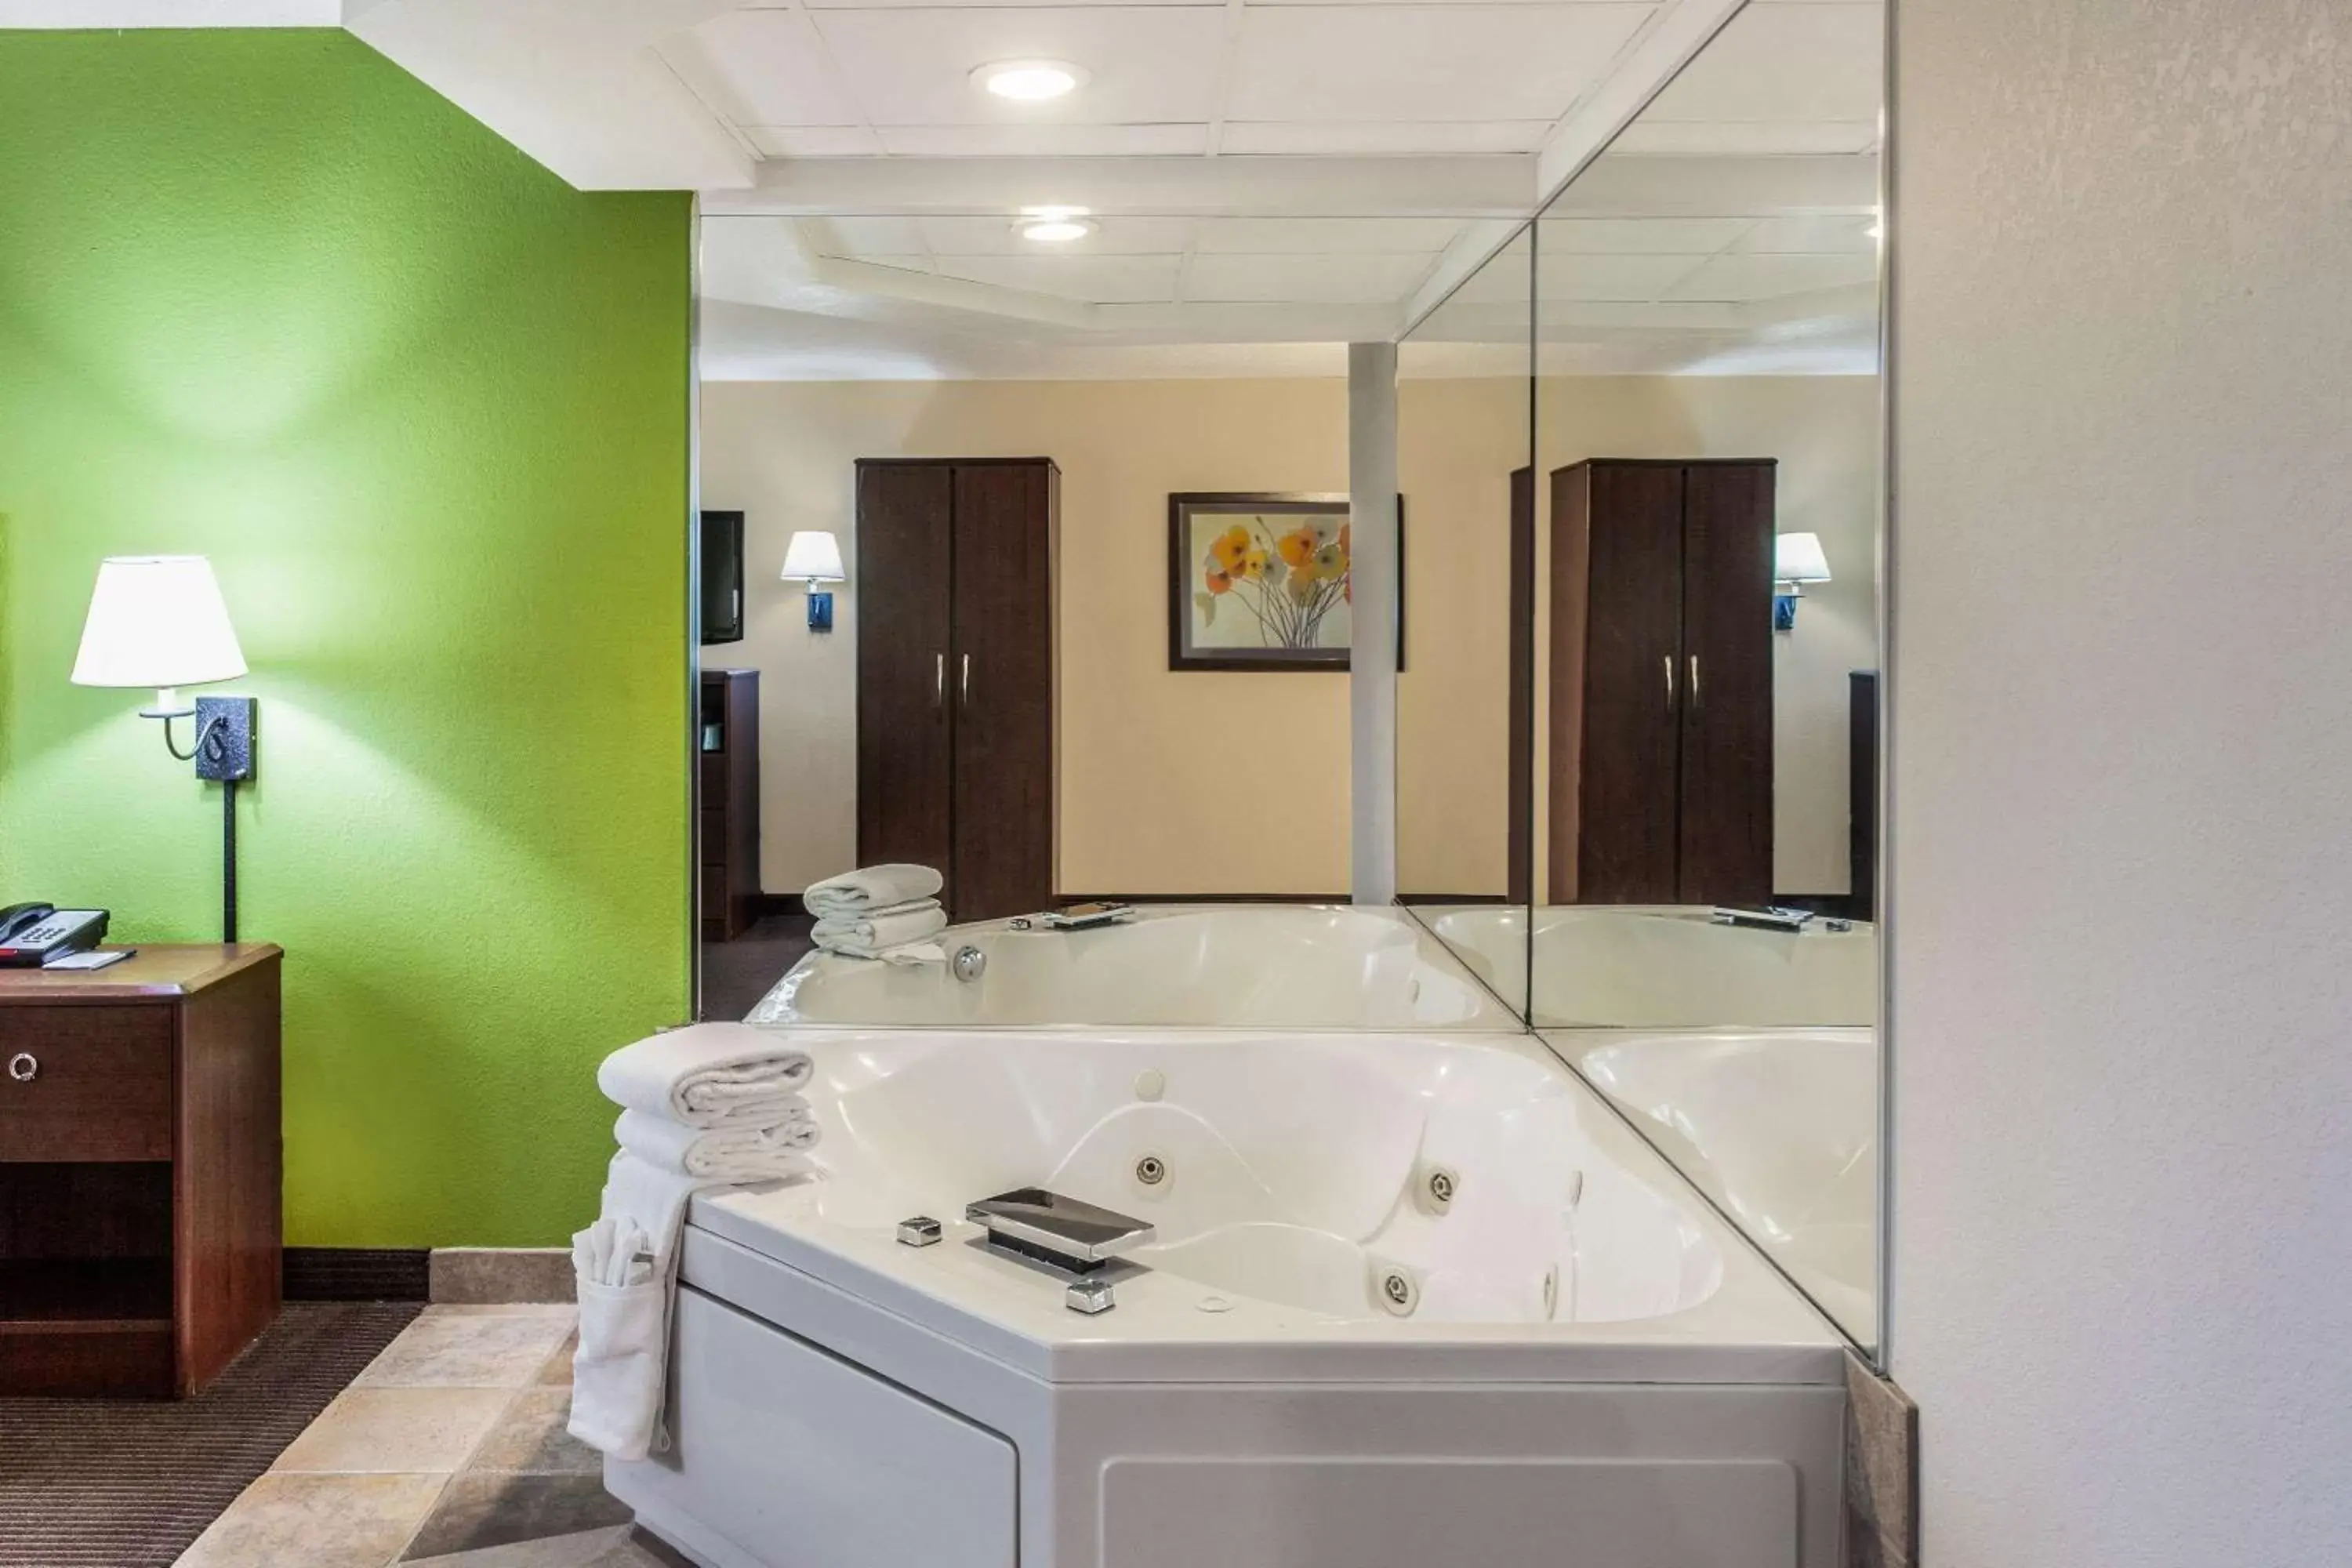 Photo of the whole room, Bathroom in AmericInn by Wyndham Stillwater